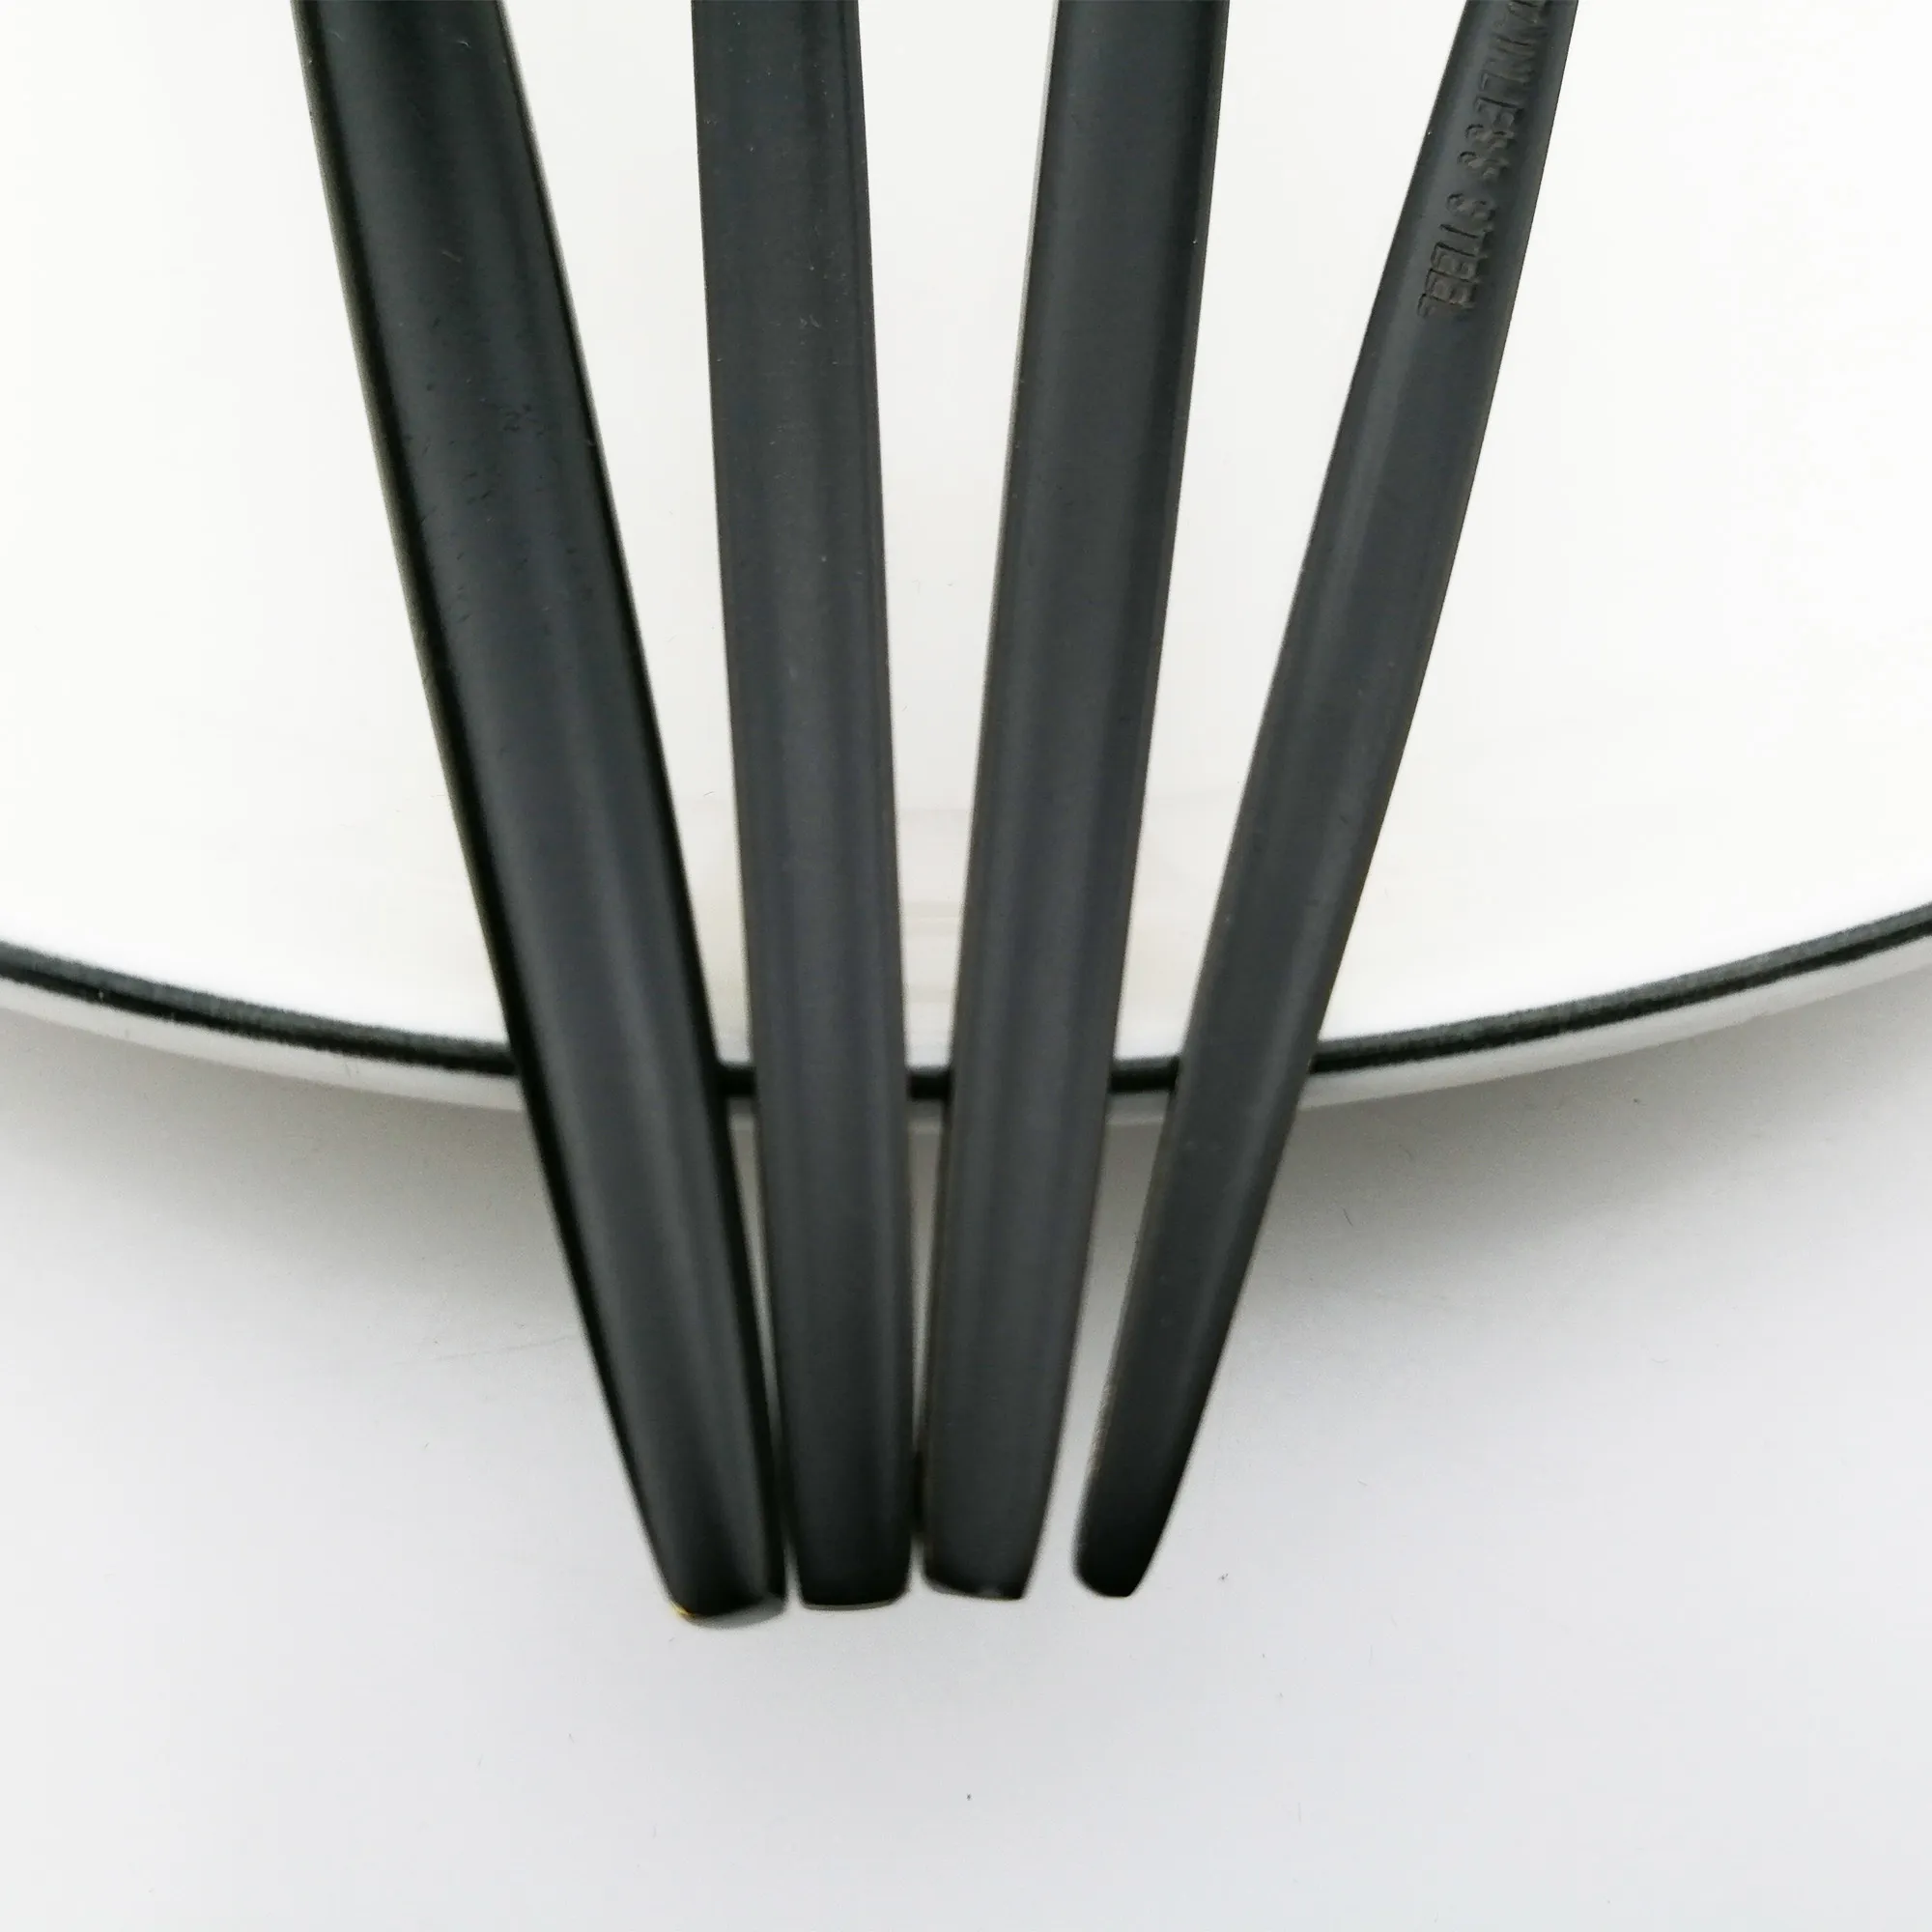 24 pezzi di stoviglie in oro bianco in acciaio inossidabile 18/10 coltello forchetta cucchiaio posate da tavola da cucina set di posate all'ingrosso 201128